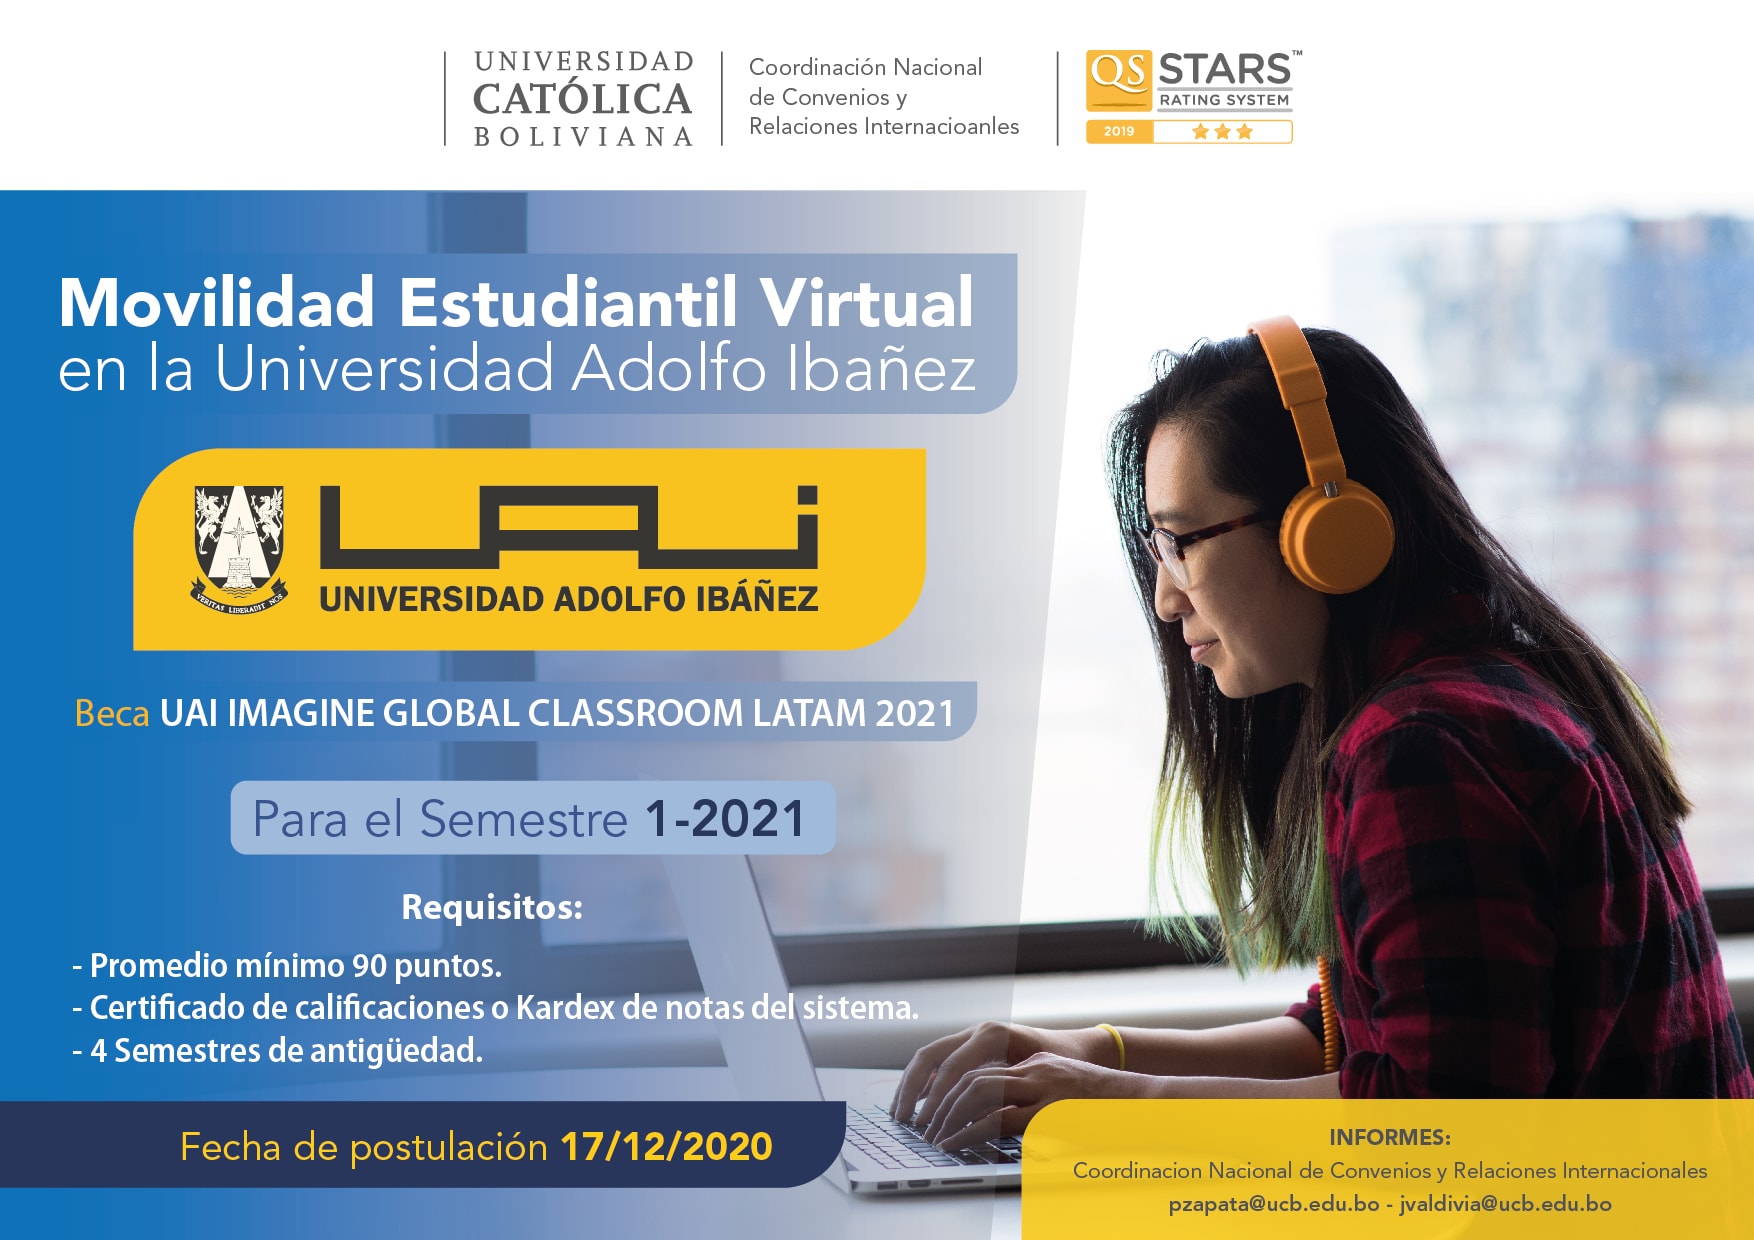 Programa de Movilidad Estudiantil Virtual en la Universidad Adolfo Ibañez